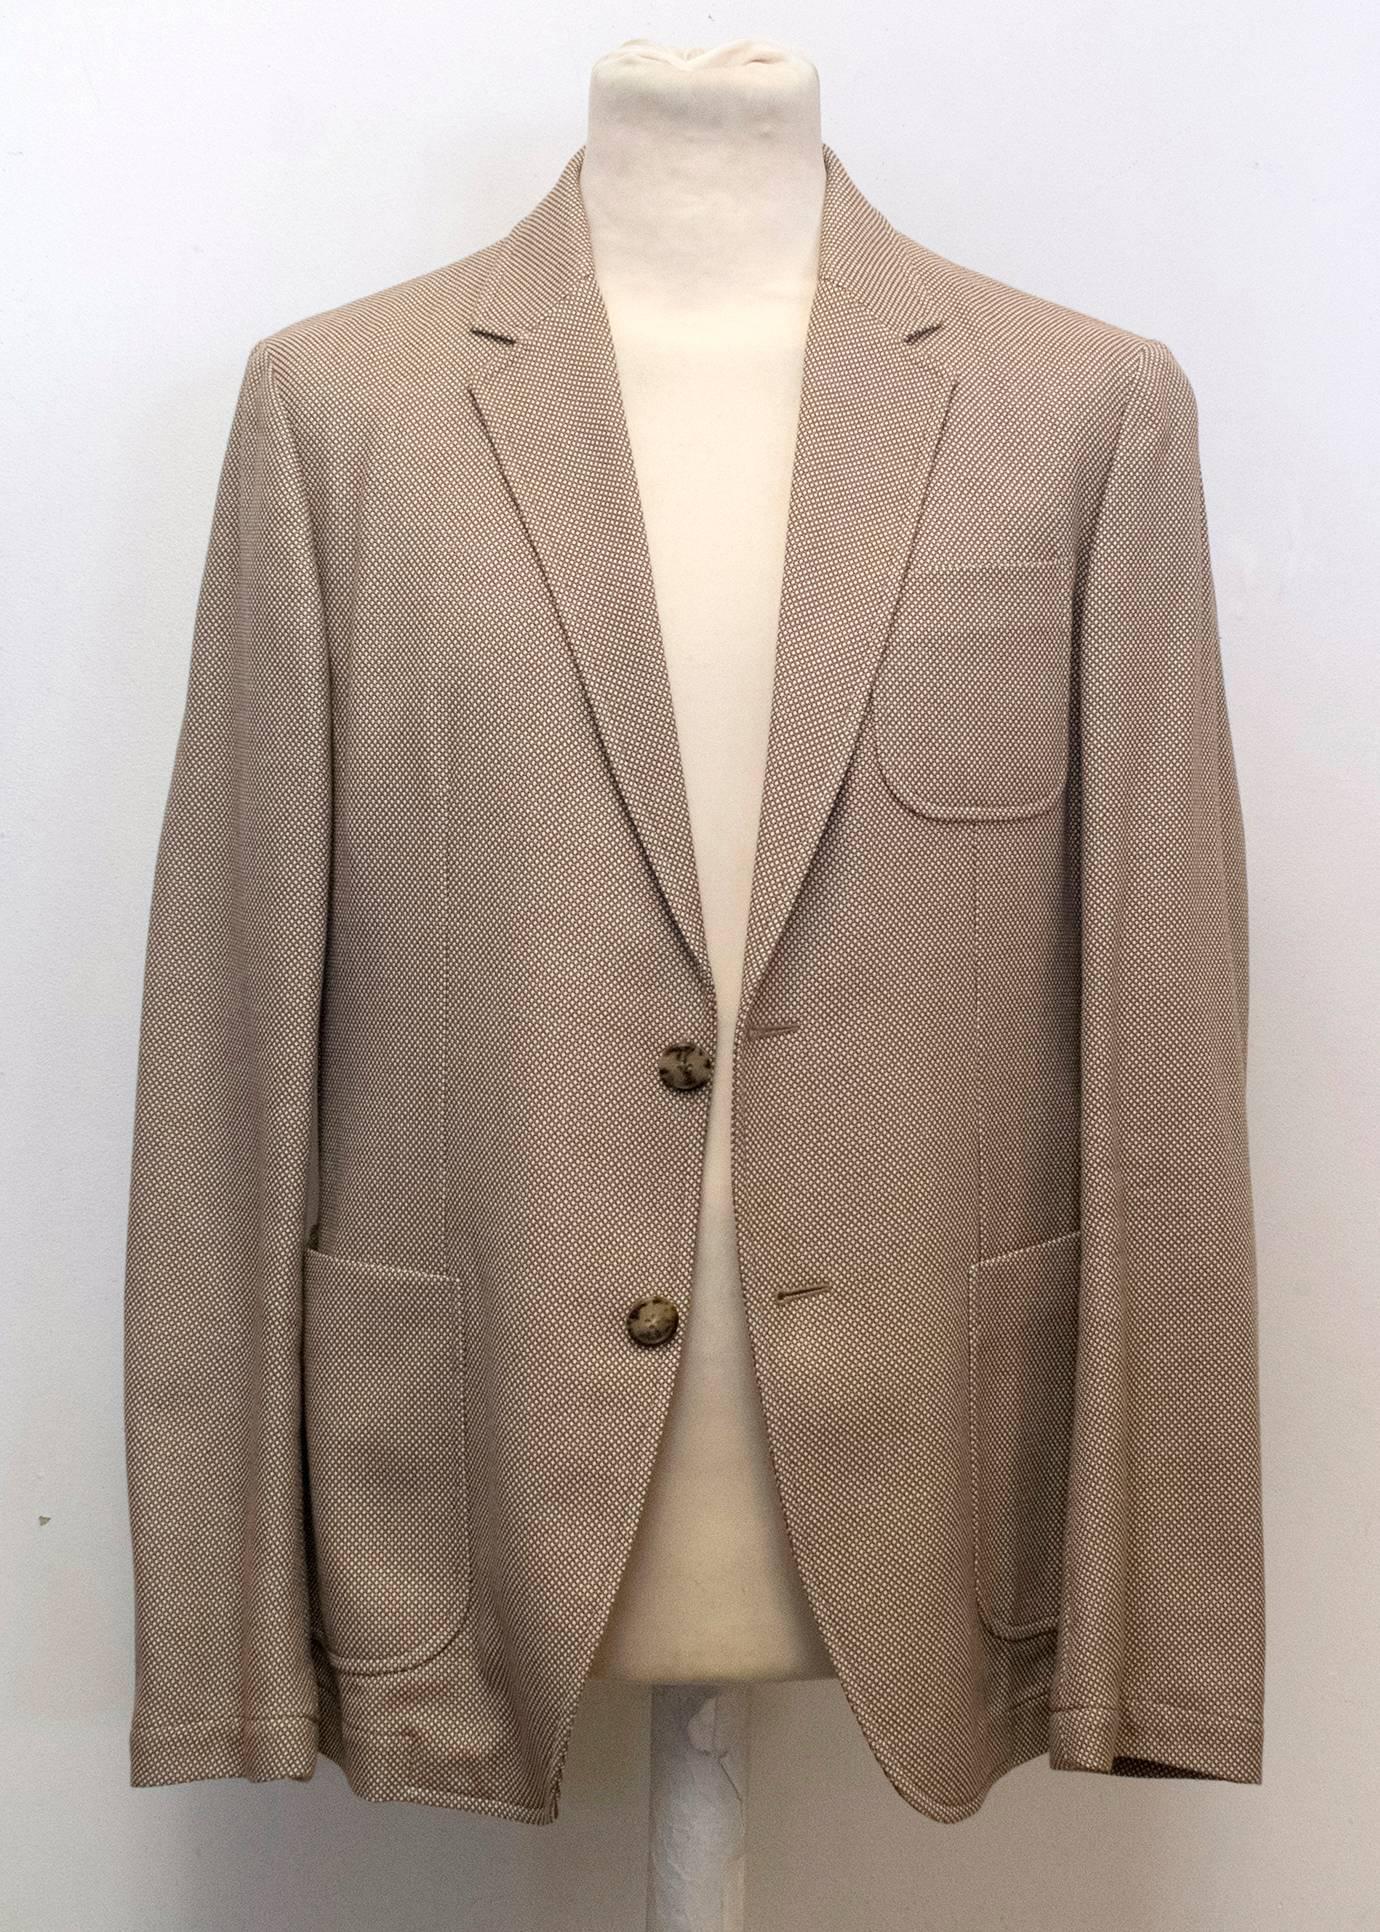 Alexander McQueen Men's Brown Tweed Relaxed Fit Blazer  For Sale 3